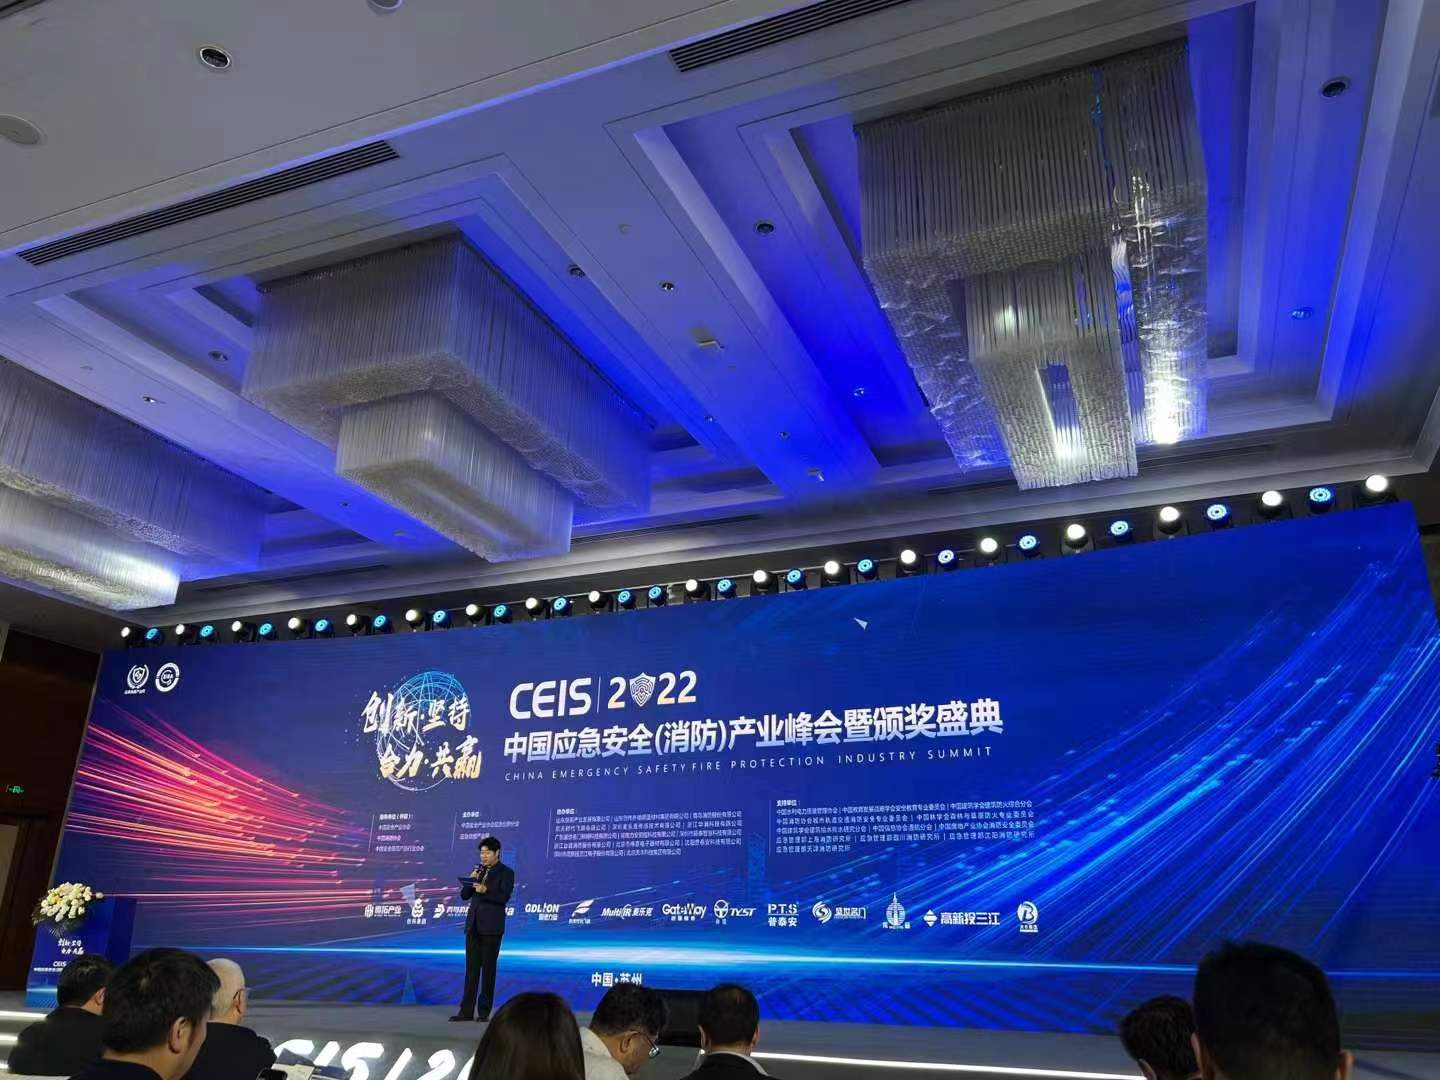 Čínsky priemyselný summit o núdzovej bezpečnosti (protipožiarnej ochrane) a slávnostné odovzdávanie cien Top Ten Brands Awards